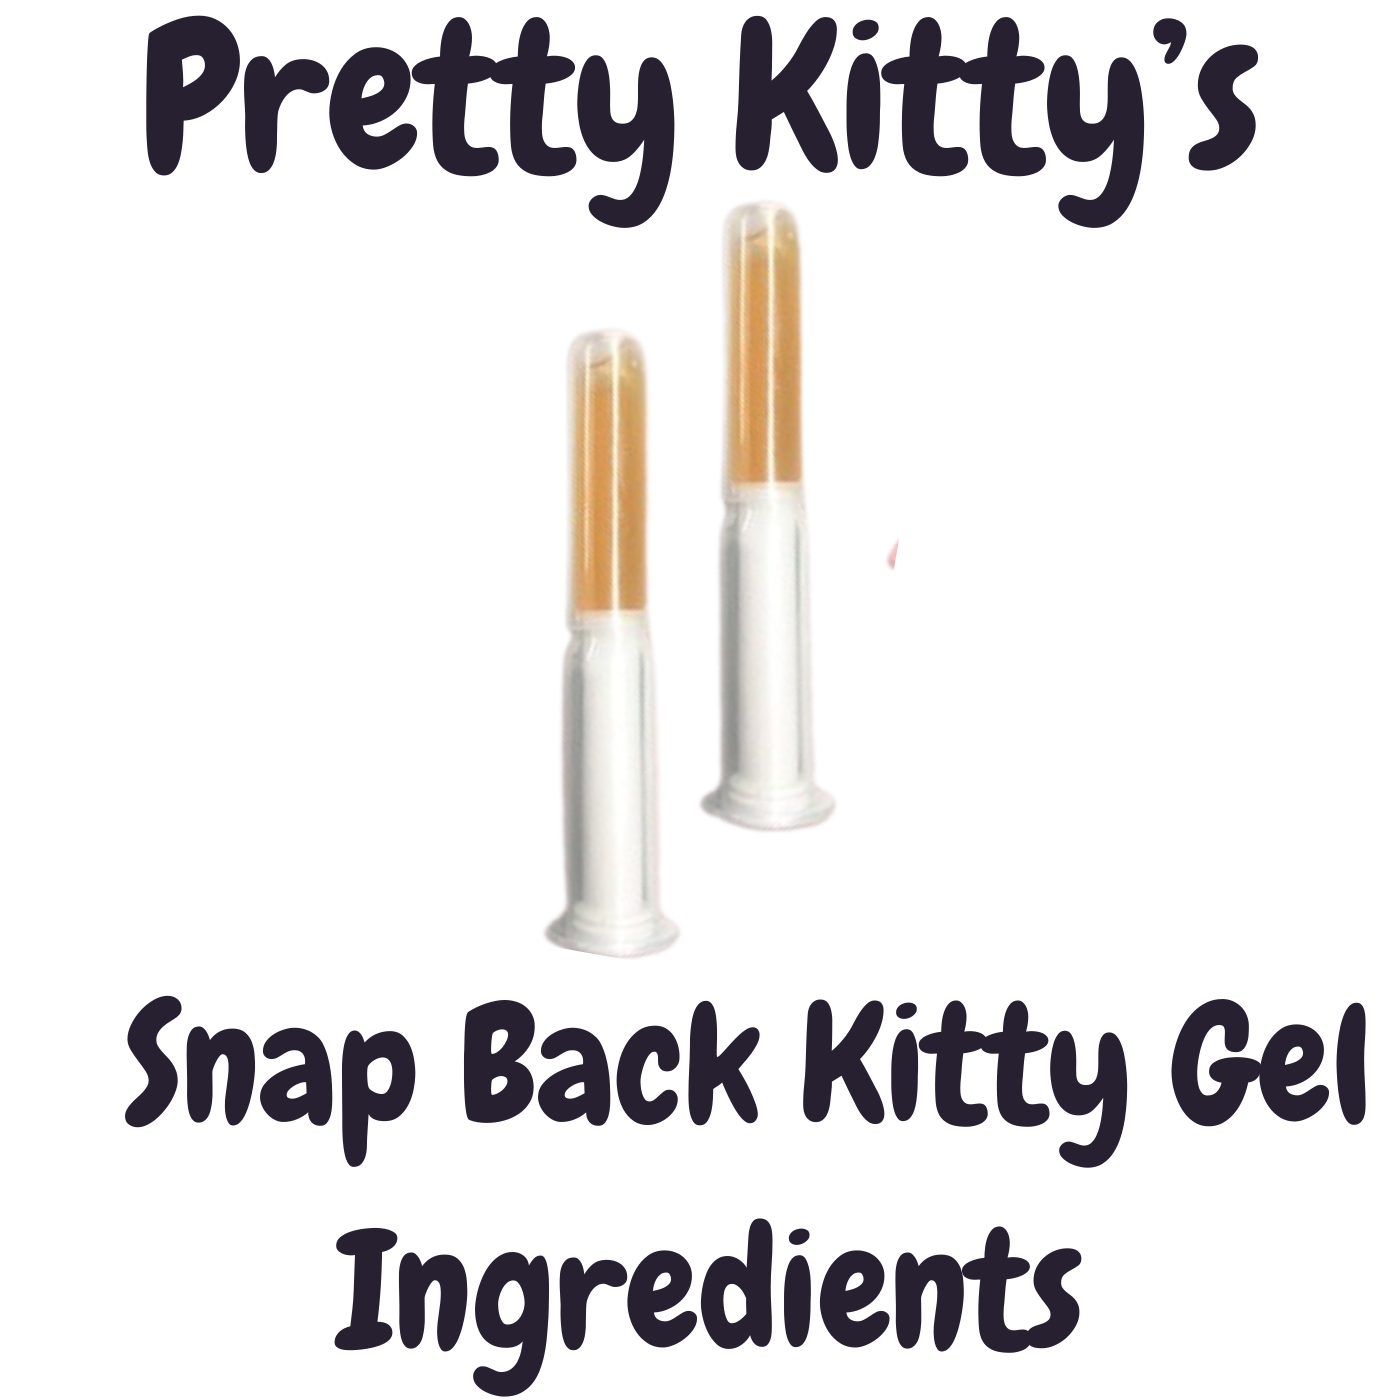 Snap Back Kitty Gel Ingredients